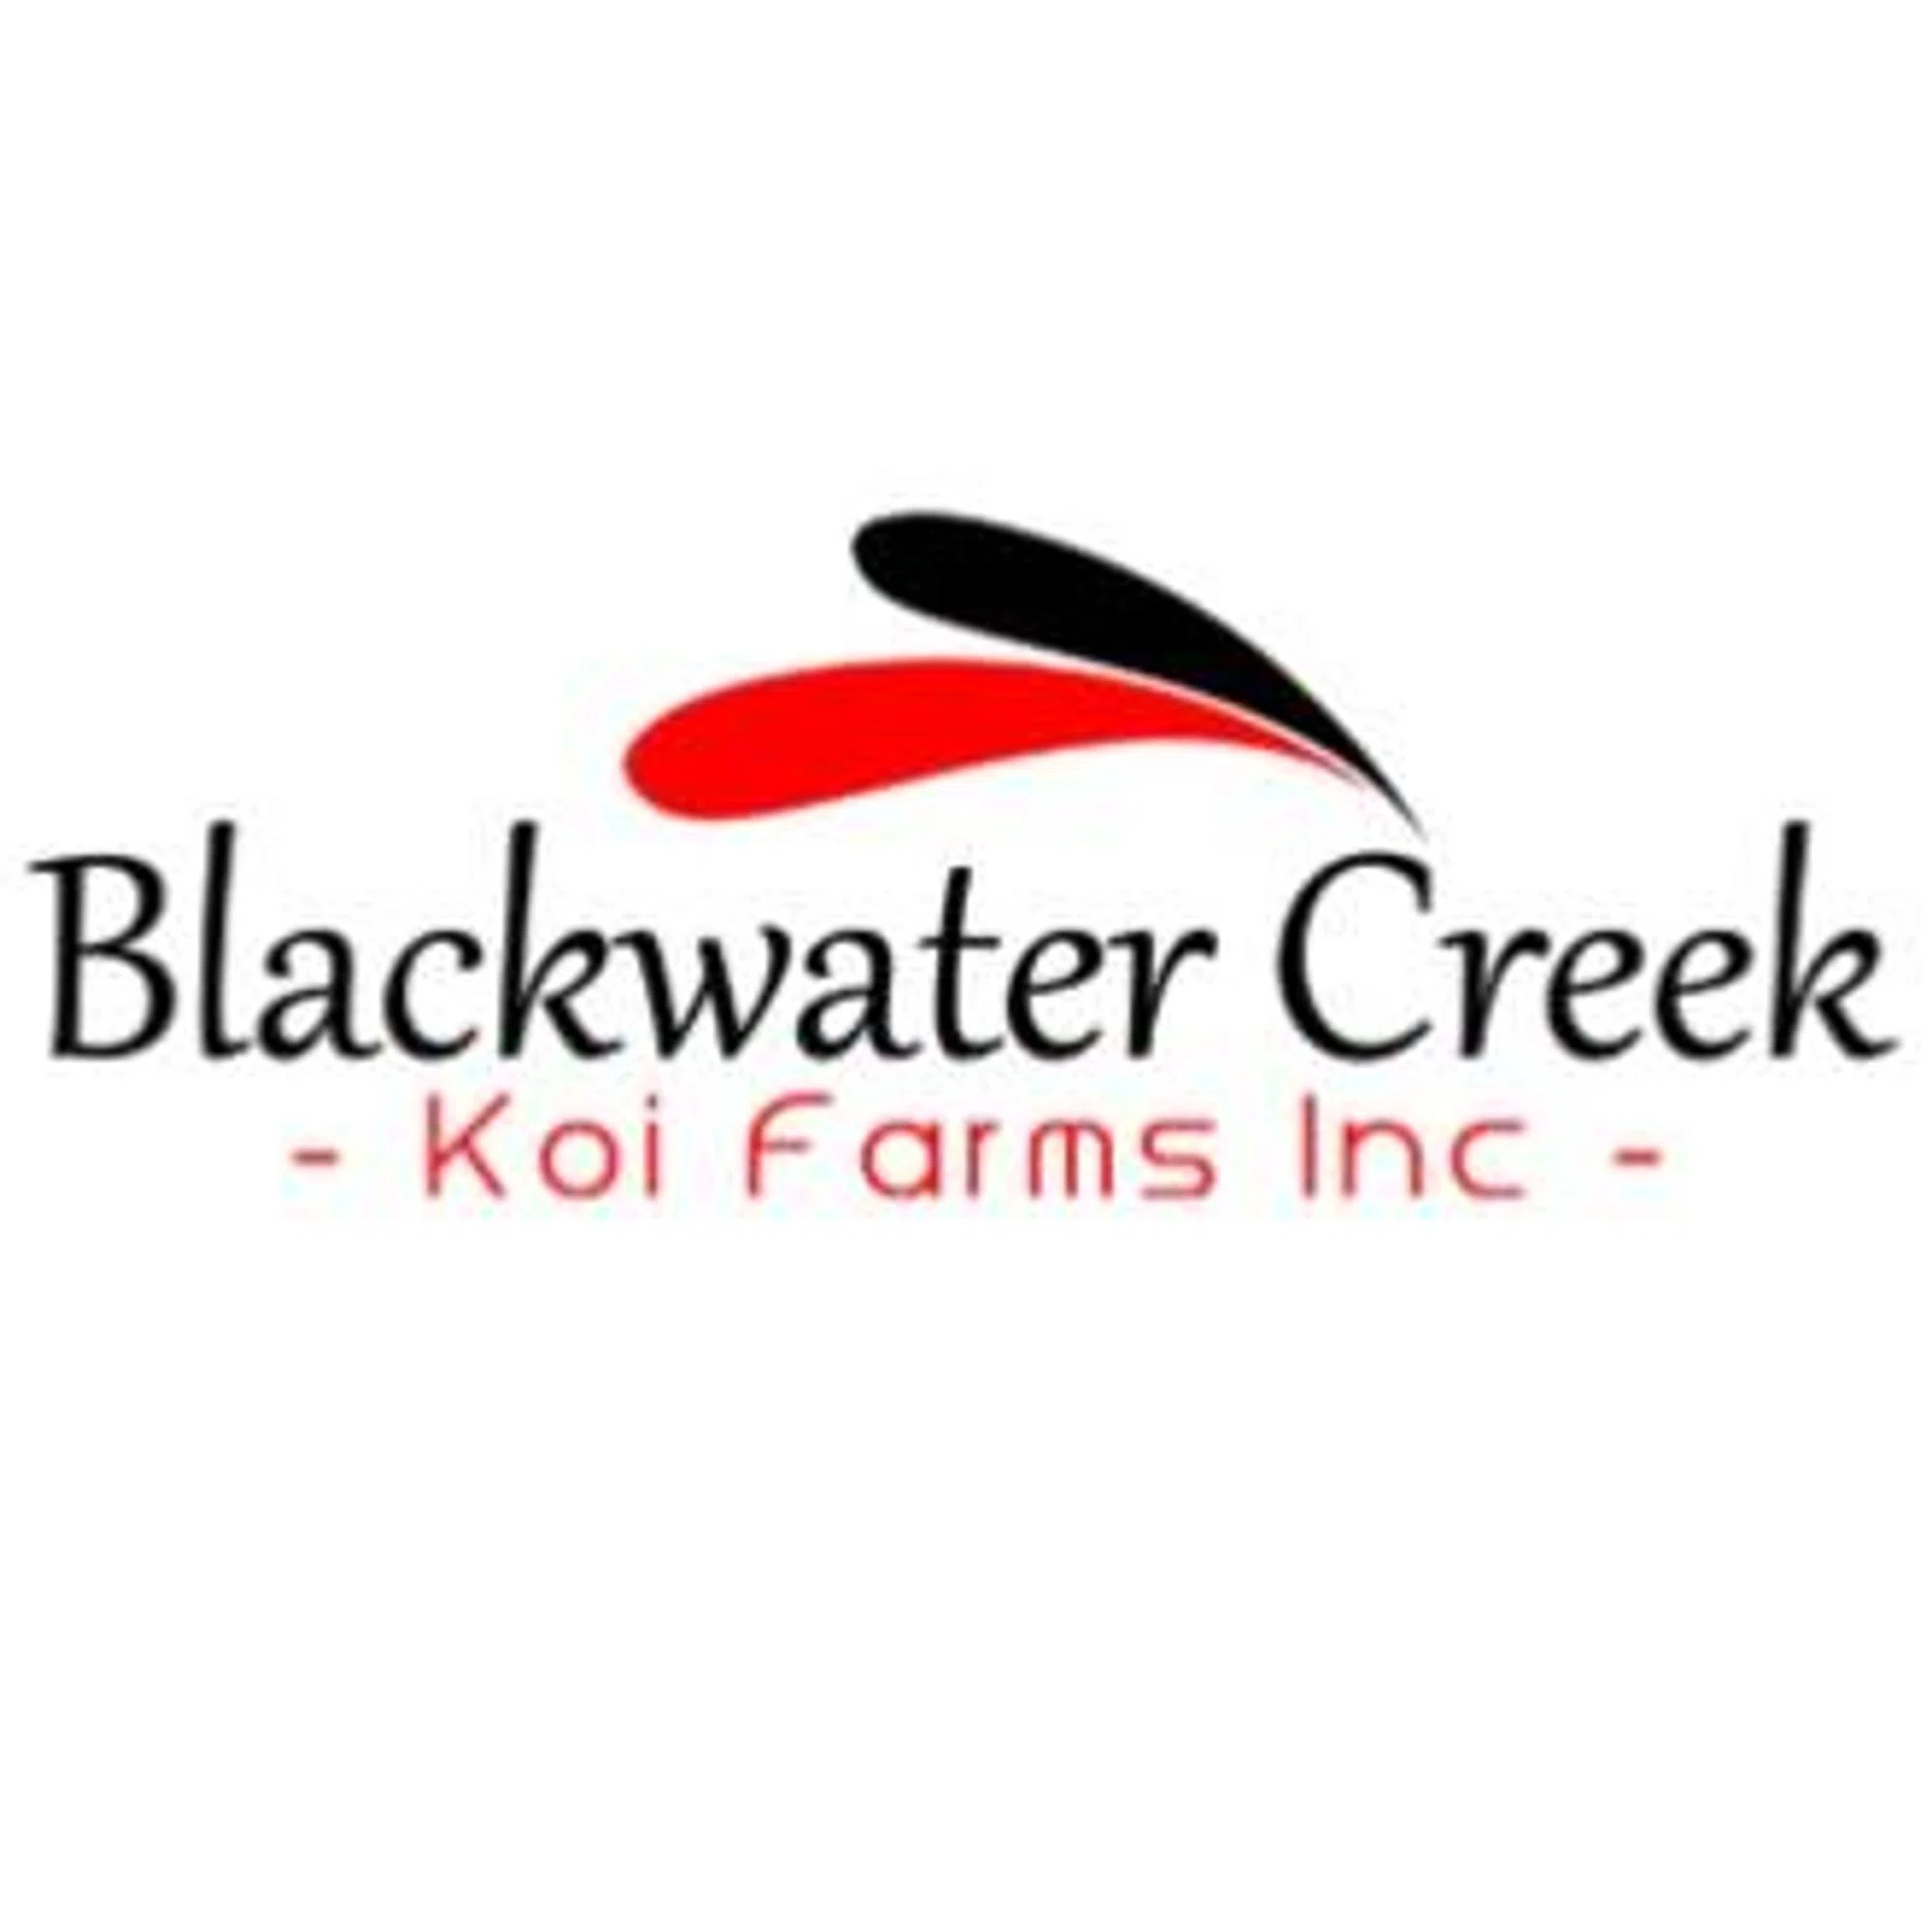 Blackwater Creek Koi Farms